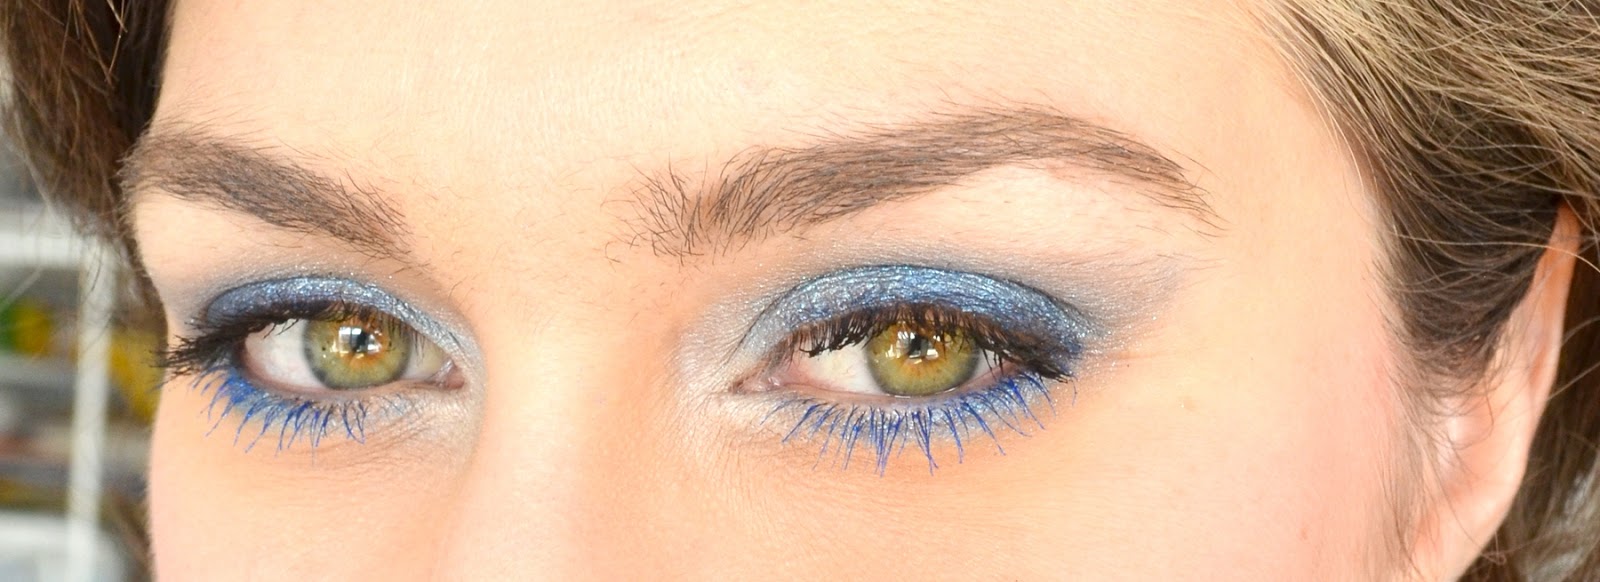 Chanel Beauty Stylo Yeux Waterproof Long-Lasting Eyeliner-30 Marine  (Makeup,Eye,Eyeliner)